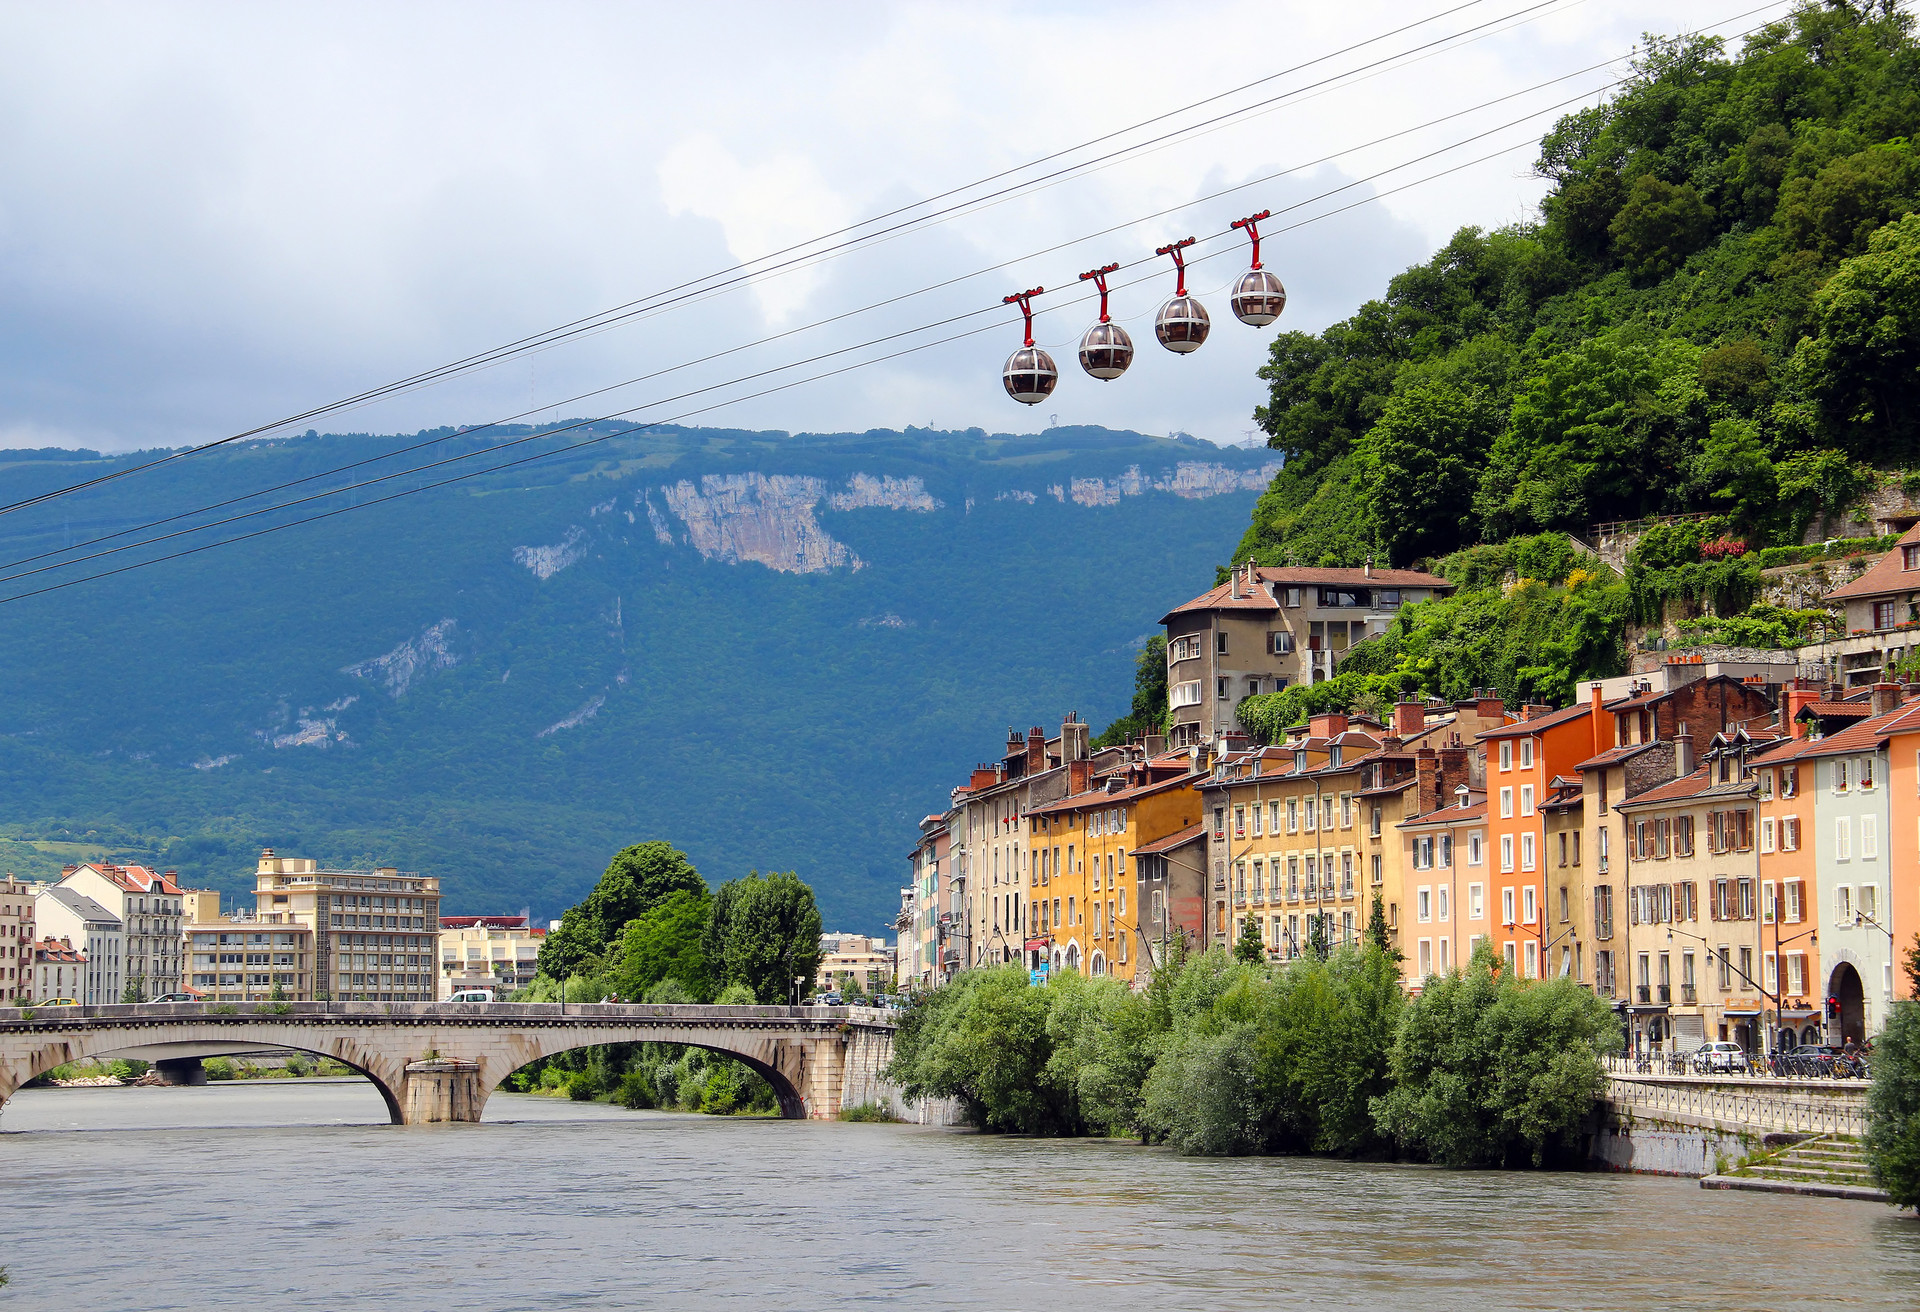 Een romantisch tripje de bergen in het adembenemende Grenoble